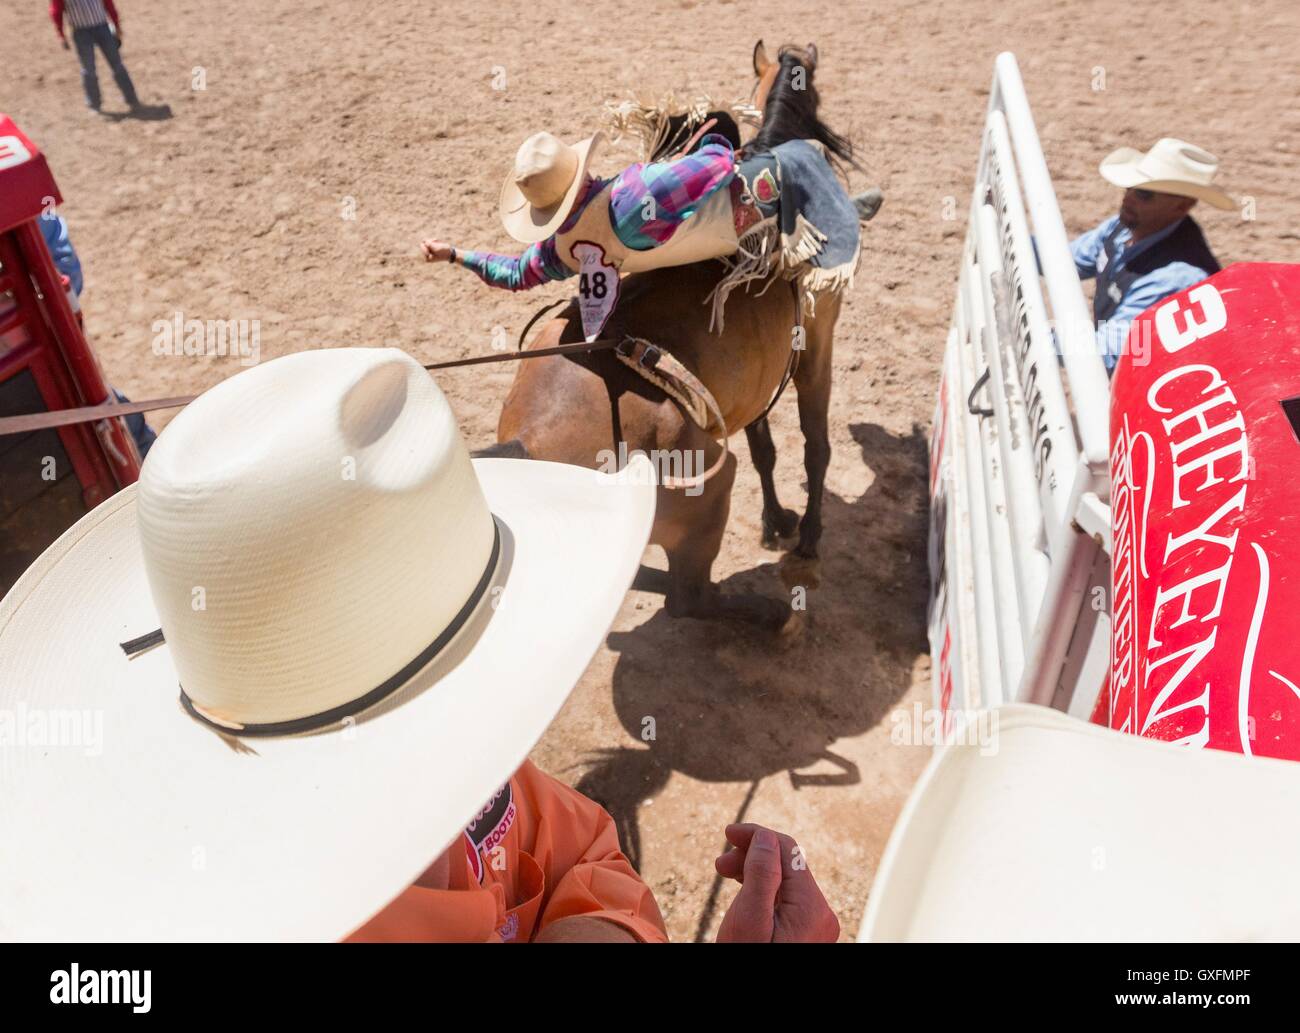 Un bareback rider si blocca durante il rodeo concorrenza a Cheyenne Frontier Days Luglio 25, 2015 in Cheyenne Wyoming. Giorni di frontiera celebra le tradizioni del cowboy del west con un rodeo, parata e fiera. Foto Stock